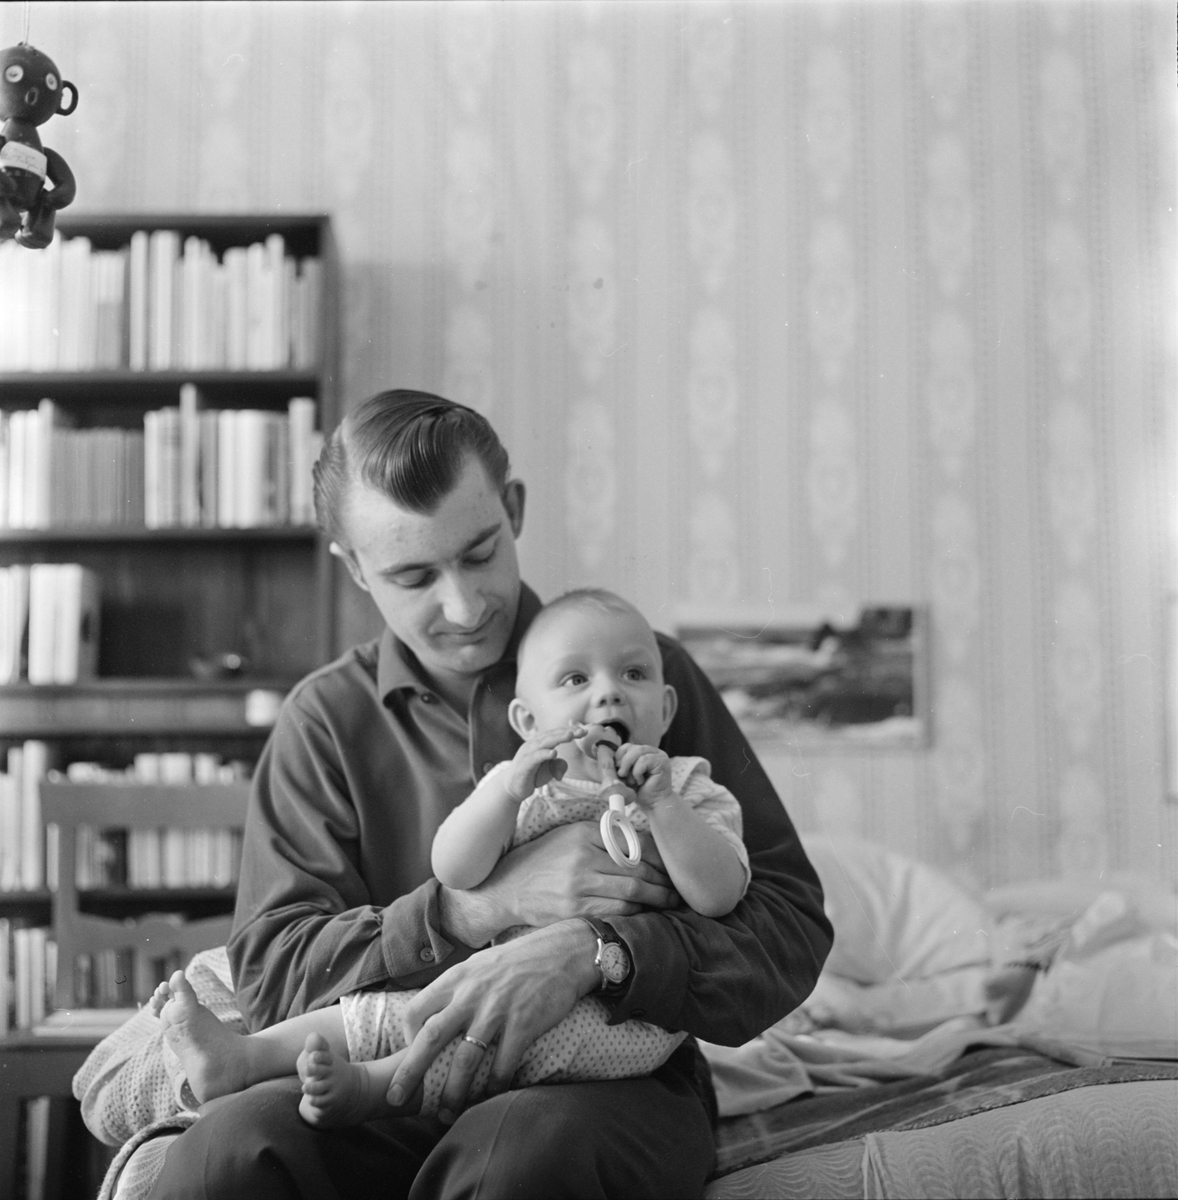 Sannolikt fotograf Gunnar Sundgrens svärson med sitt barn hemma i Gävle, Gästrikland